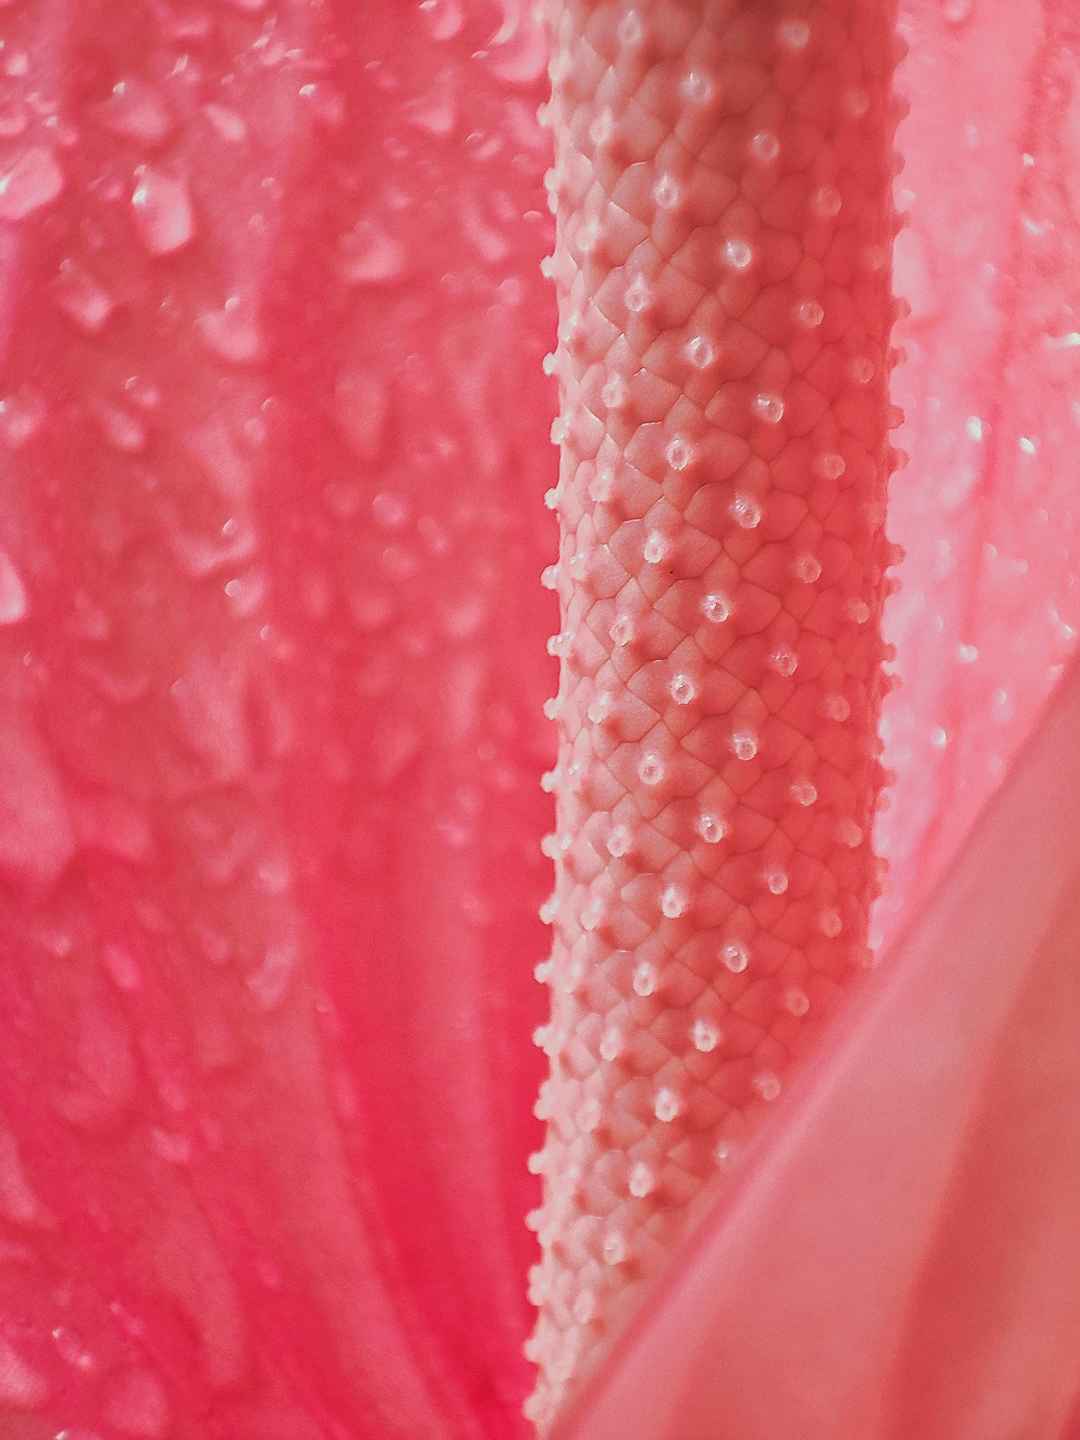 粉色花蕊微距摄影高清壁纸图片-